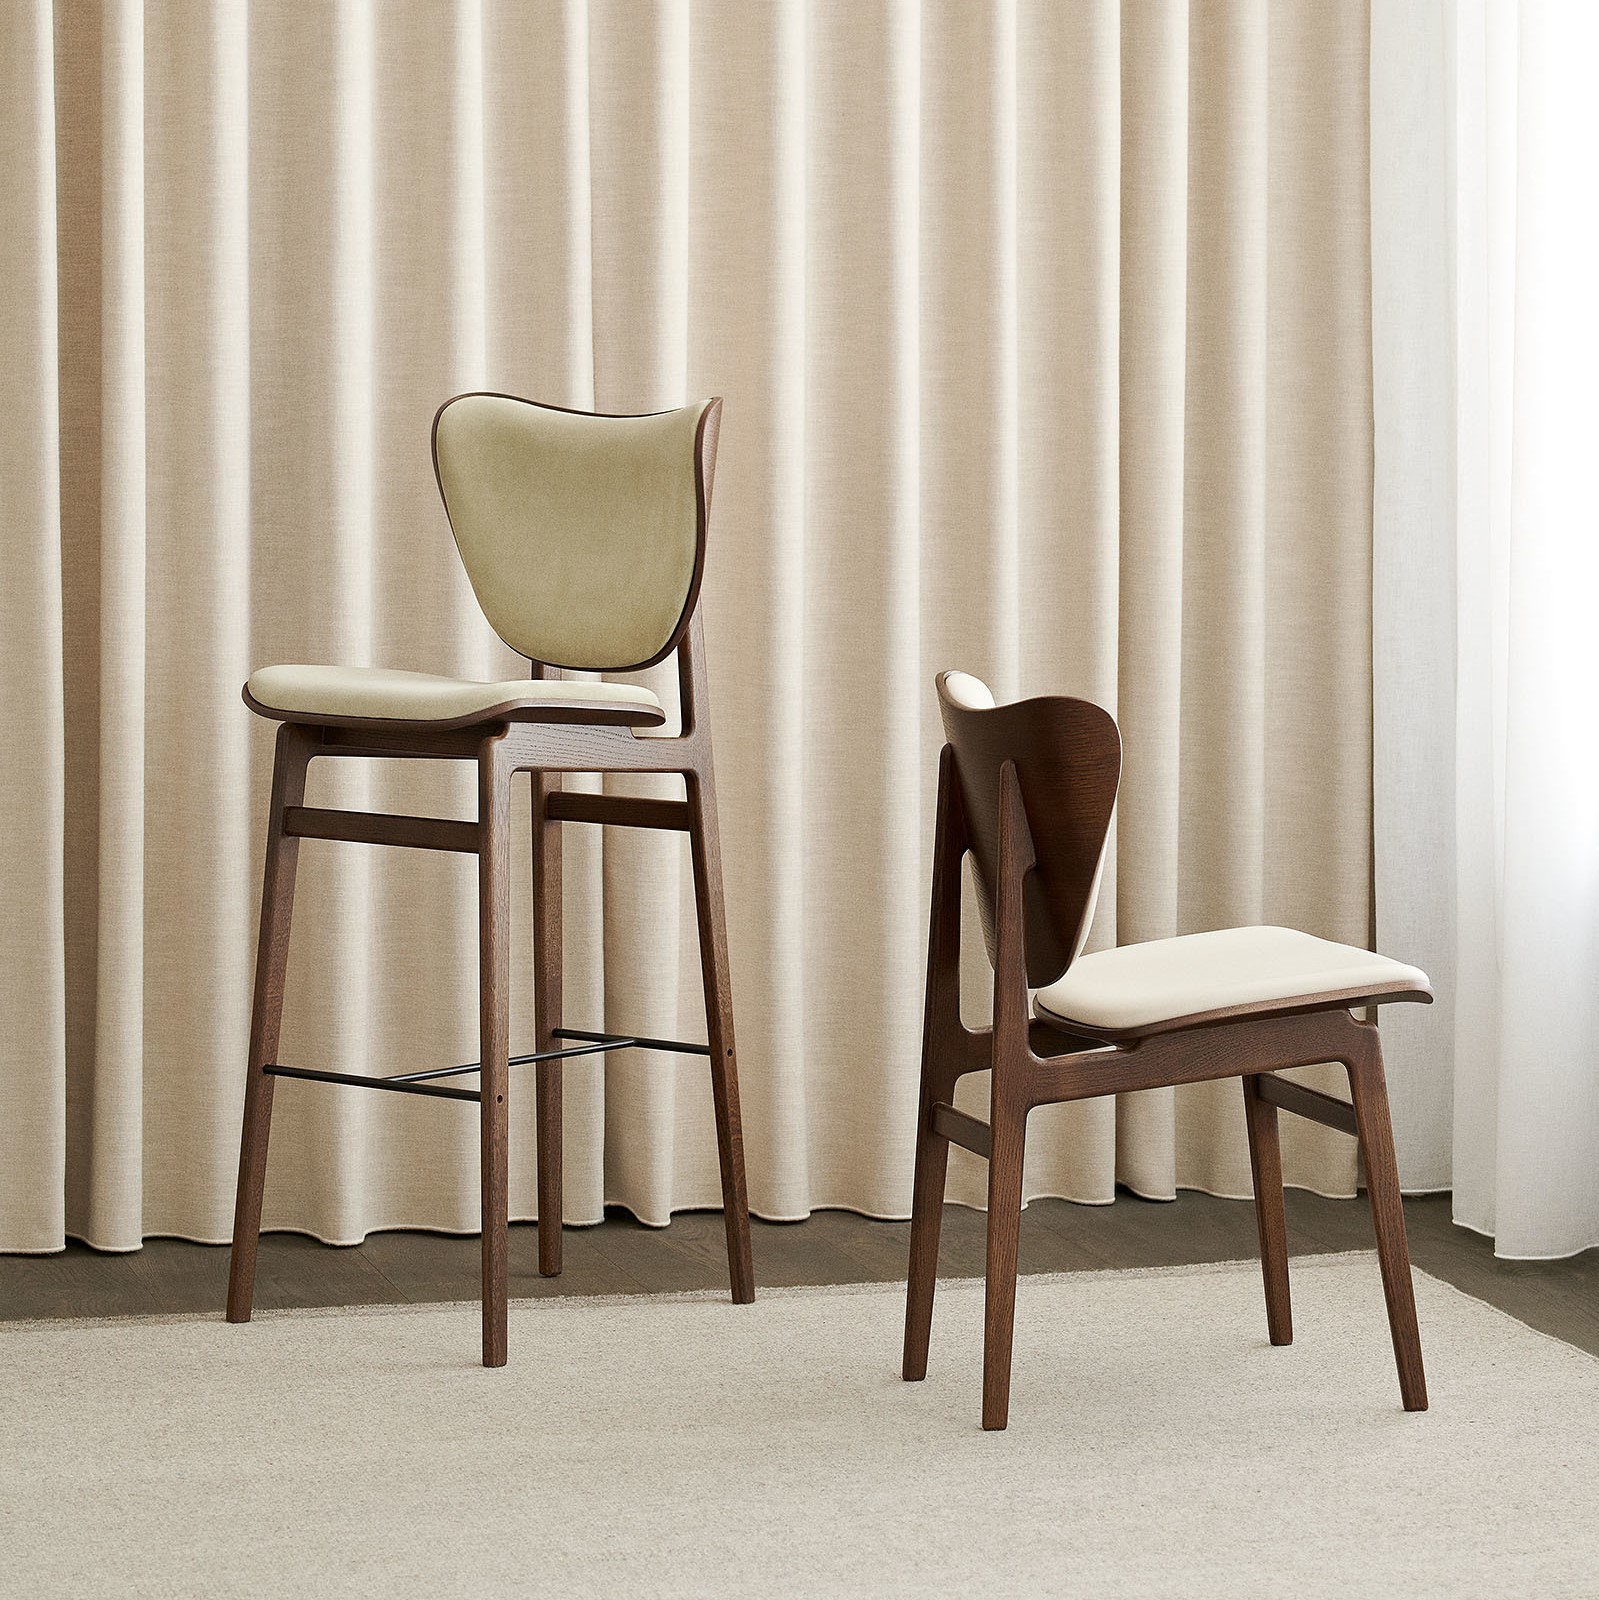 Een hoge en een lage stoel van hout voor een gordijn in neutrale kleurtinten